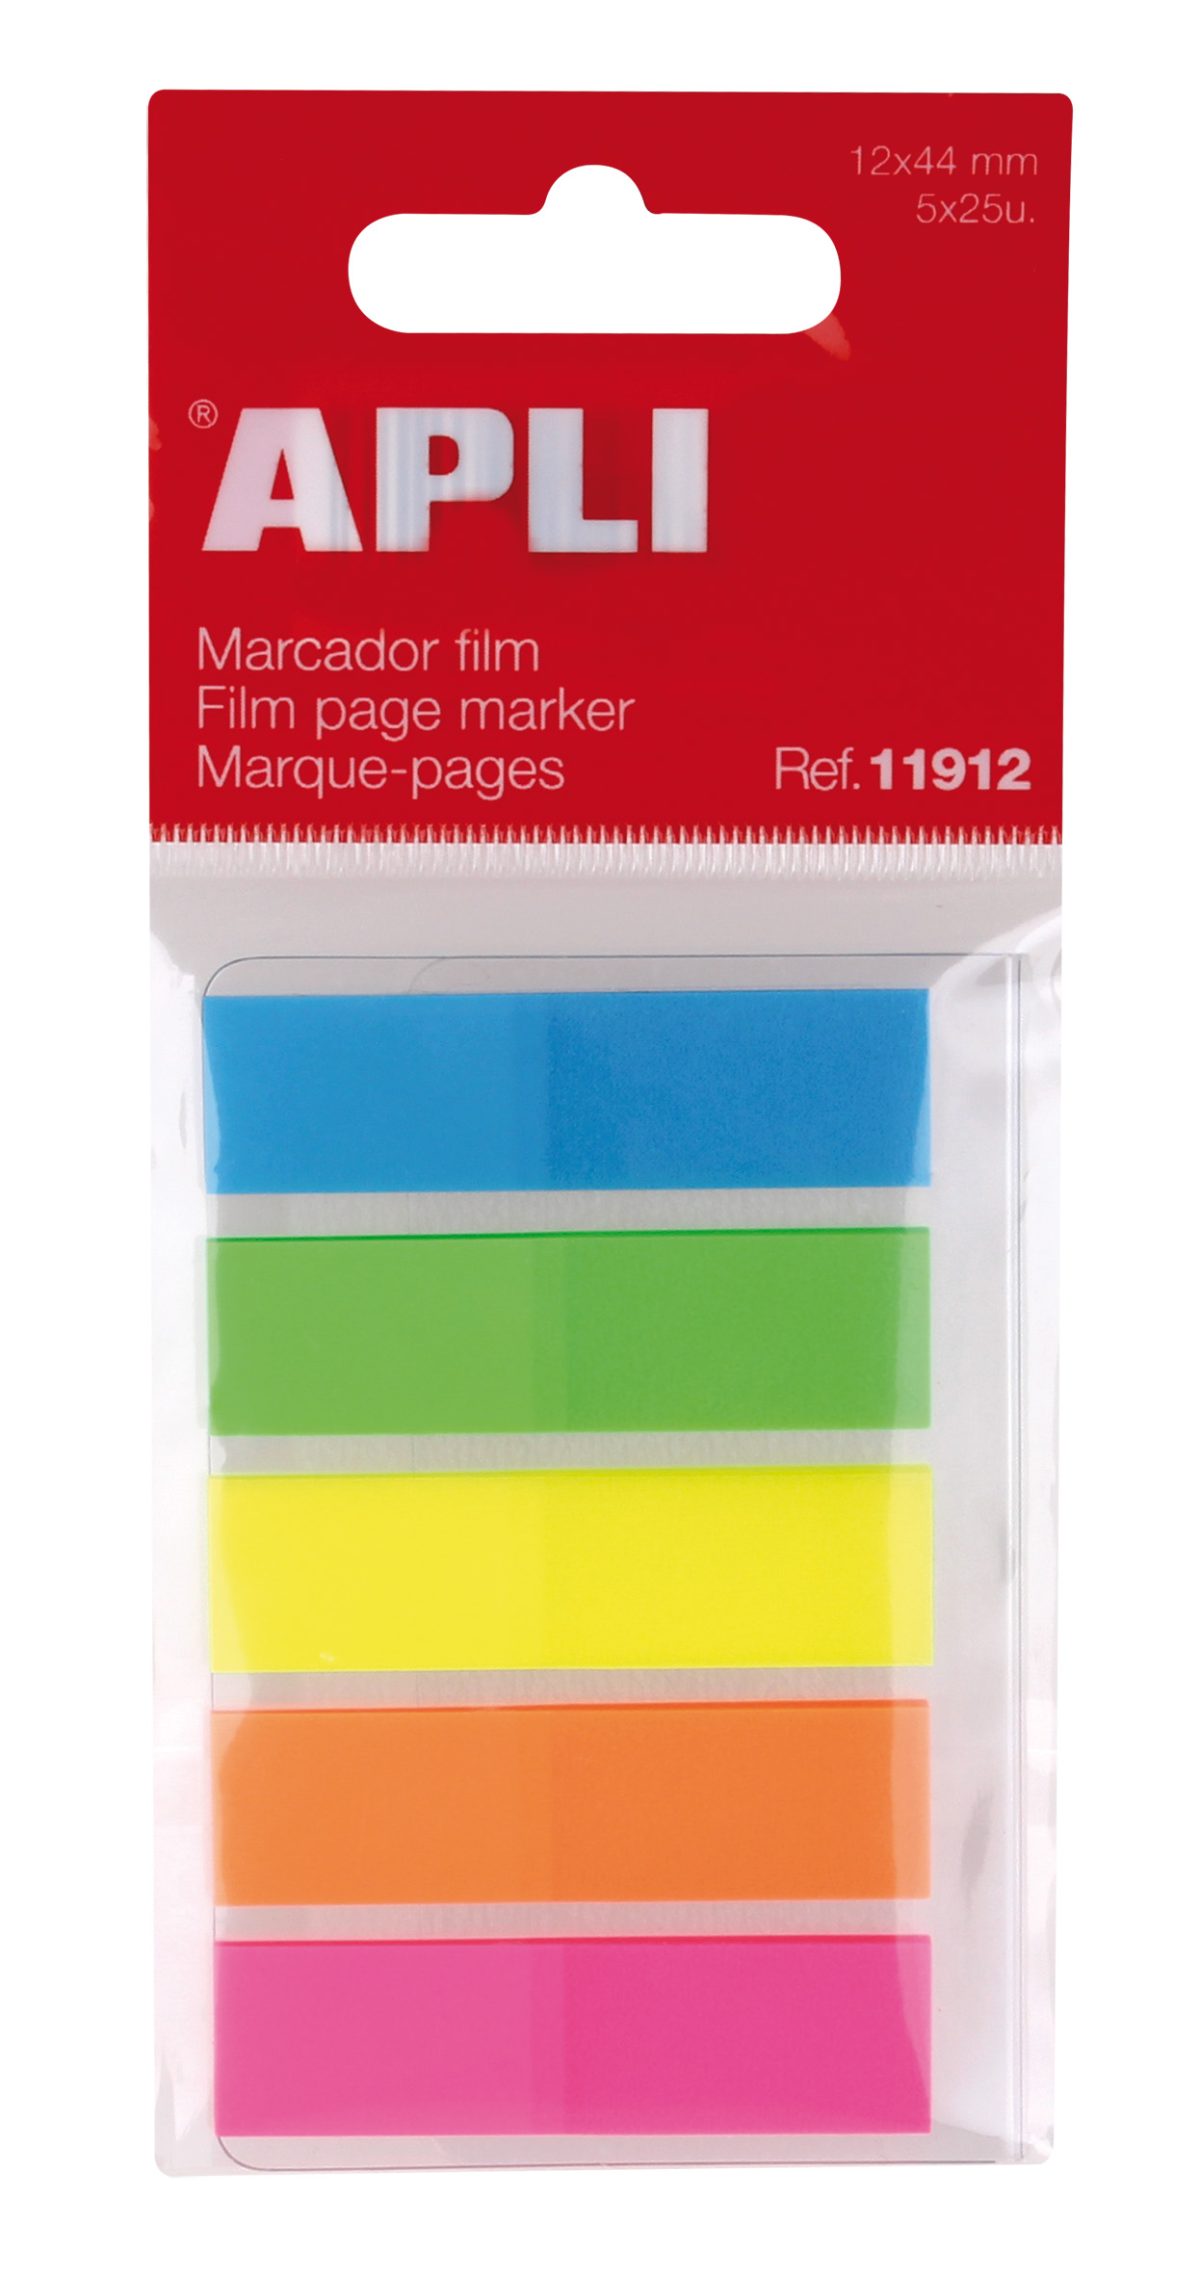 banderitas adhesivas tipo postit de plástico pequeños para marcar páginas en libros